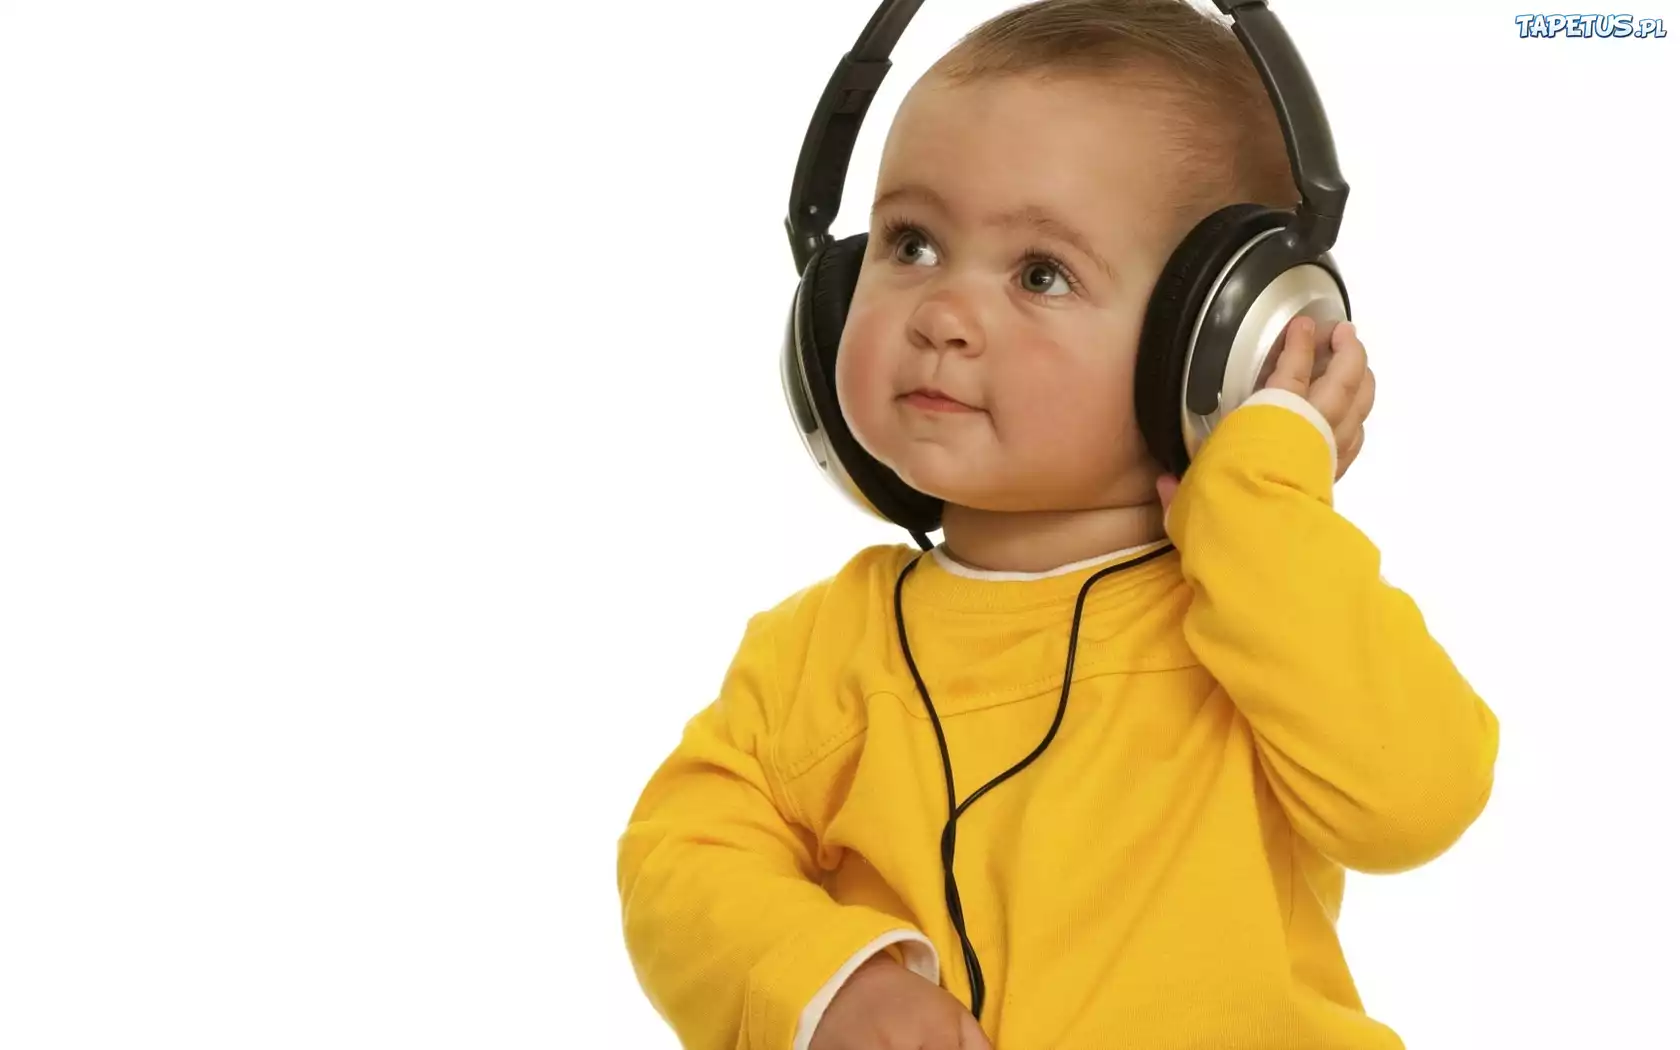 Музыки над головой. Музыкотерапия. Занятия Томатис на белом фоне. Желтые наушники из детства. Children Listening to Music.